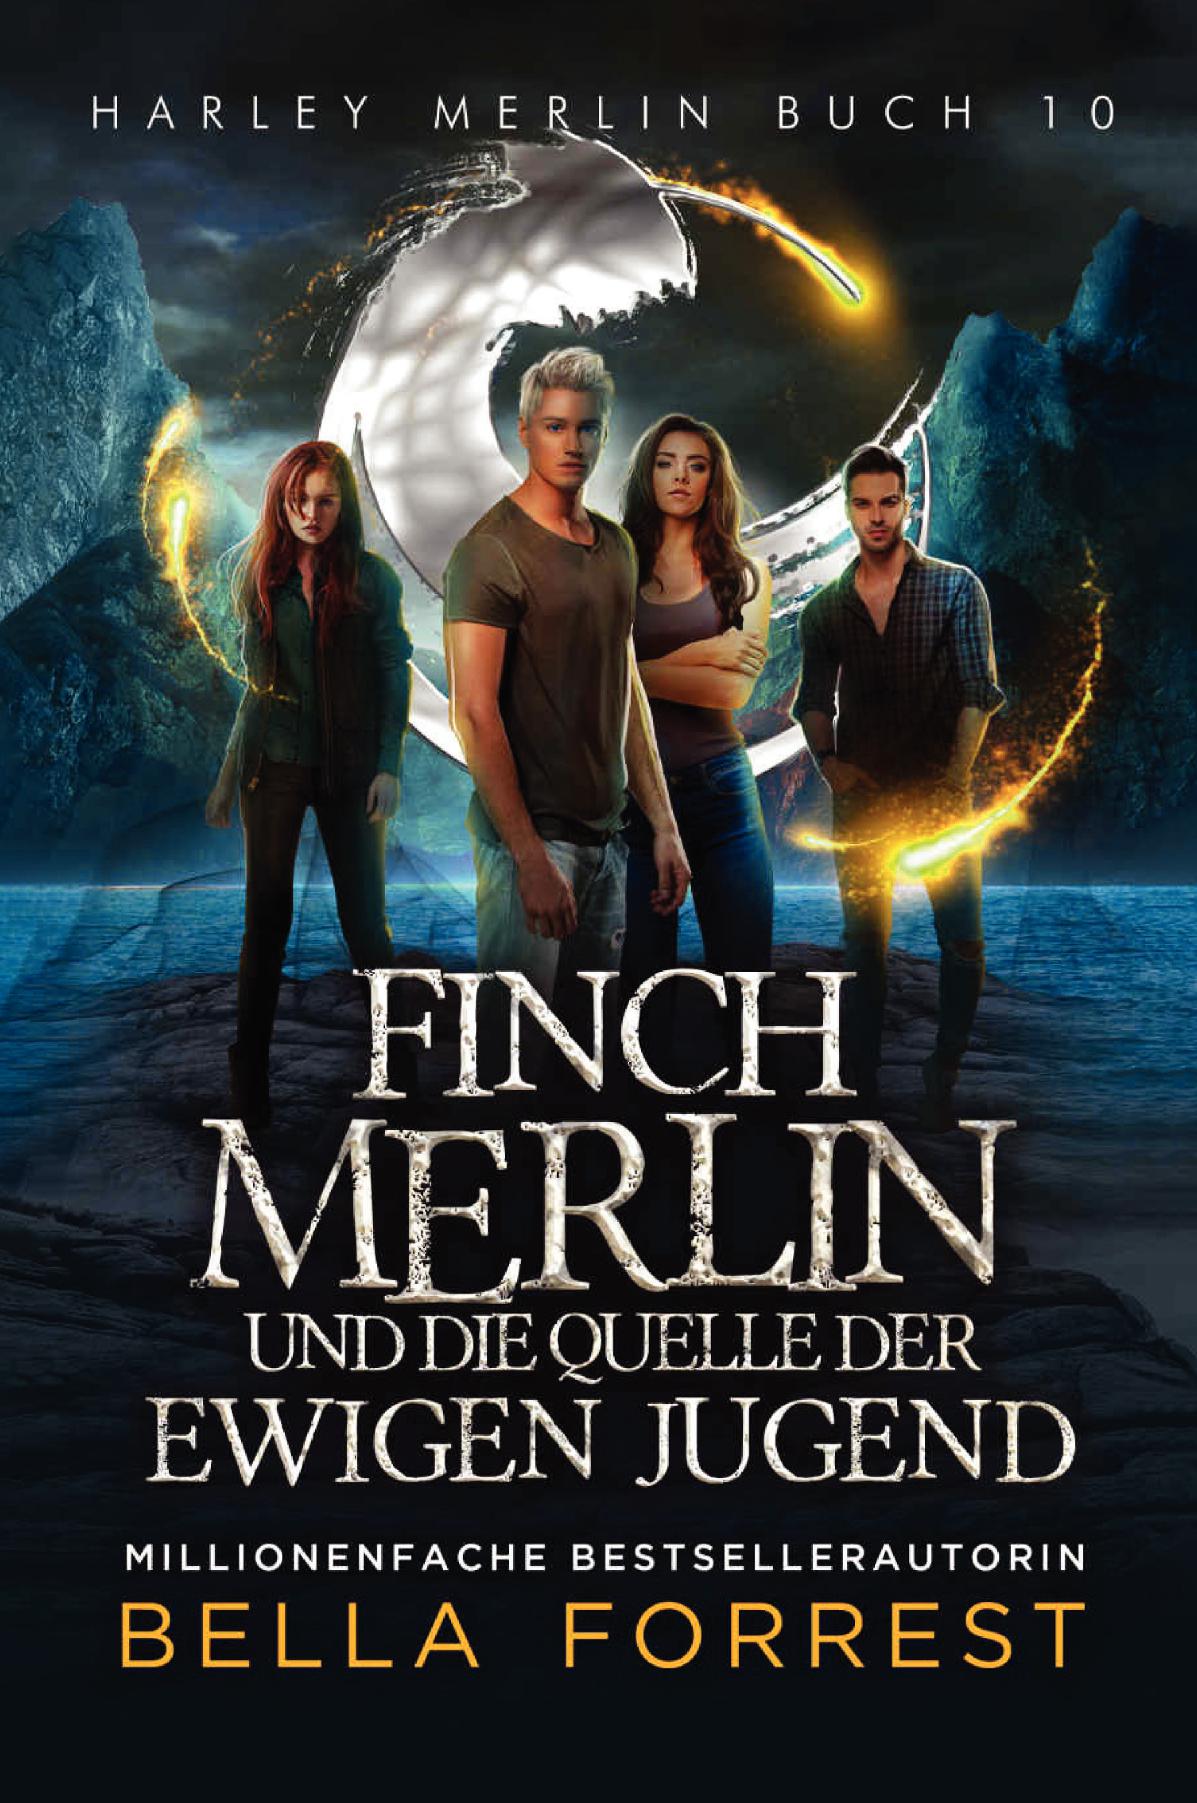 Harley Merlin 10: Finch Merlin und die Quelle der ewigen Jugend